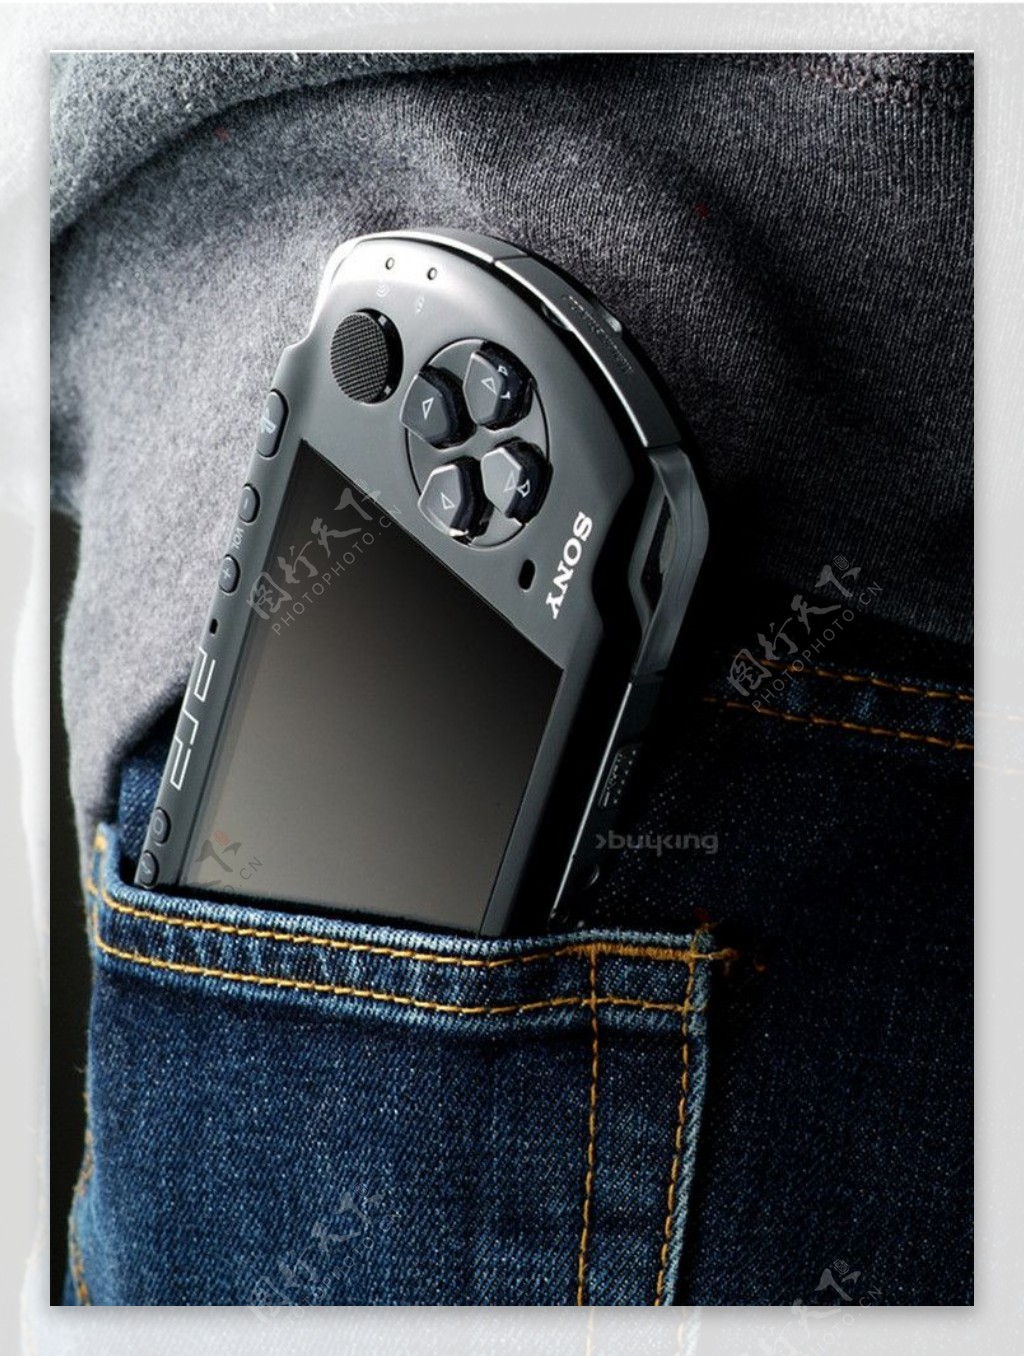 裤兜里的PSP游戏机图片